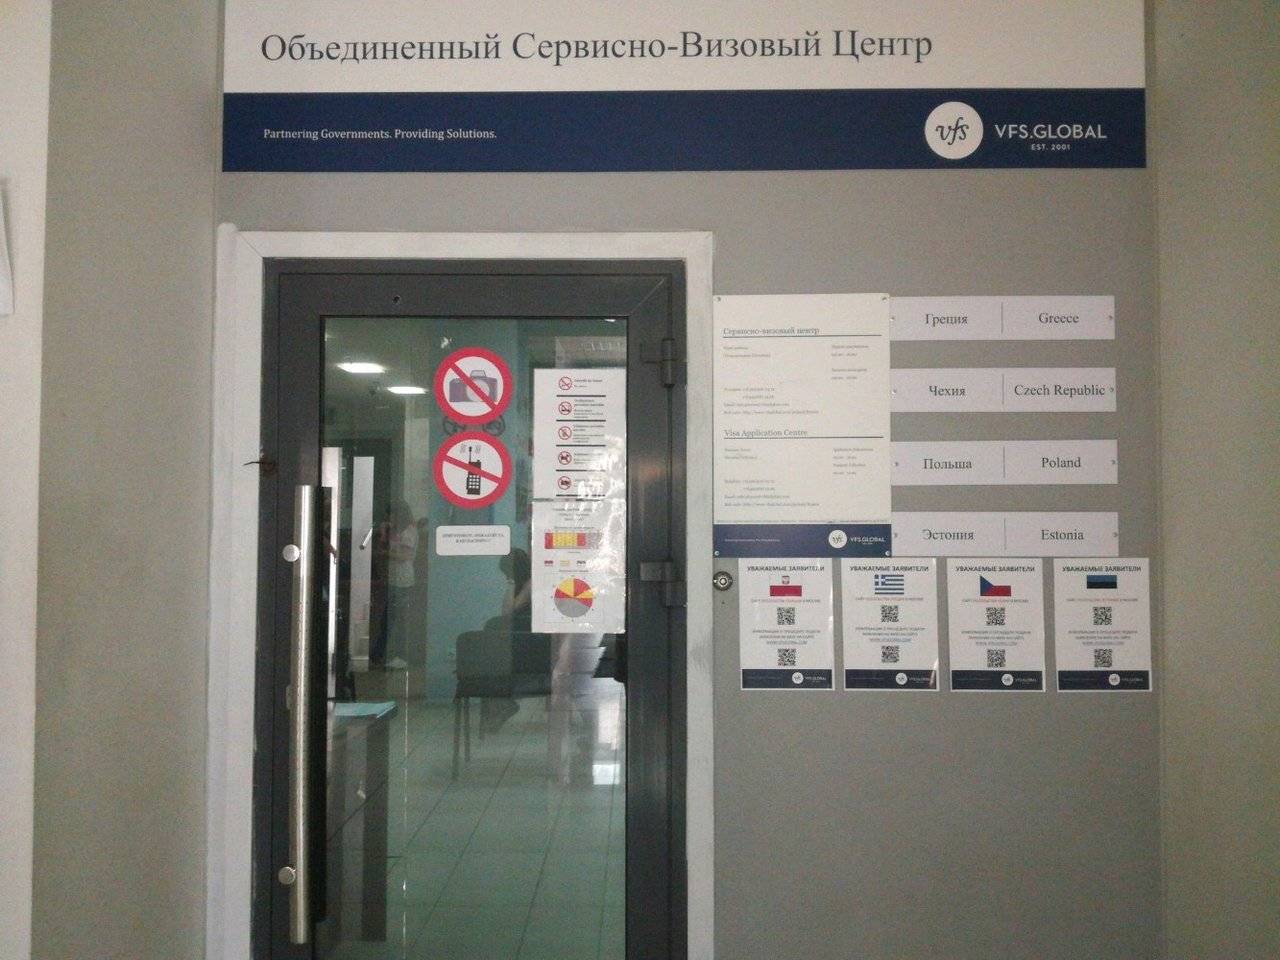 Чешский визовый центр в москве: адрес телефон, официальный сайт, режим работы